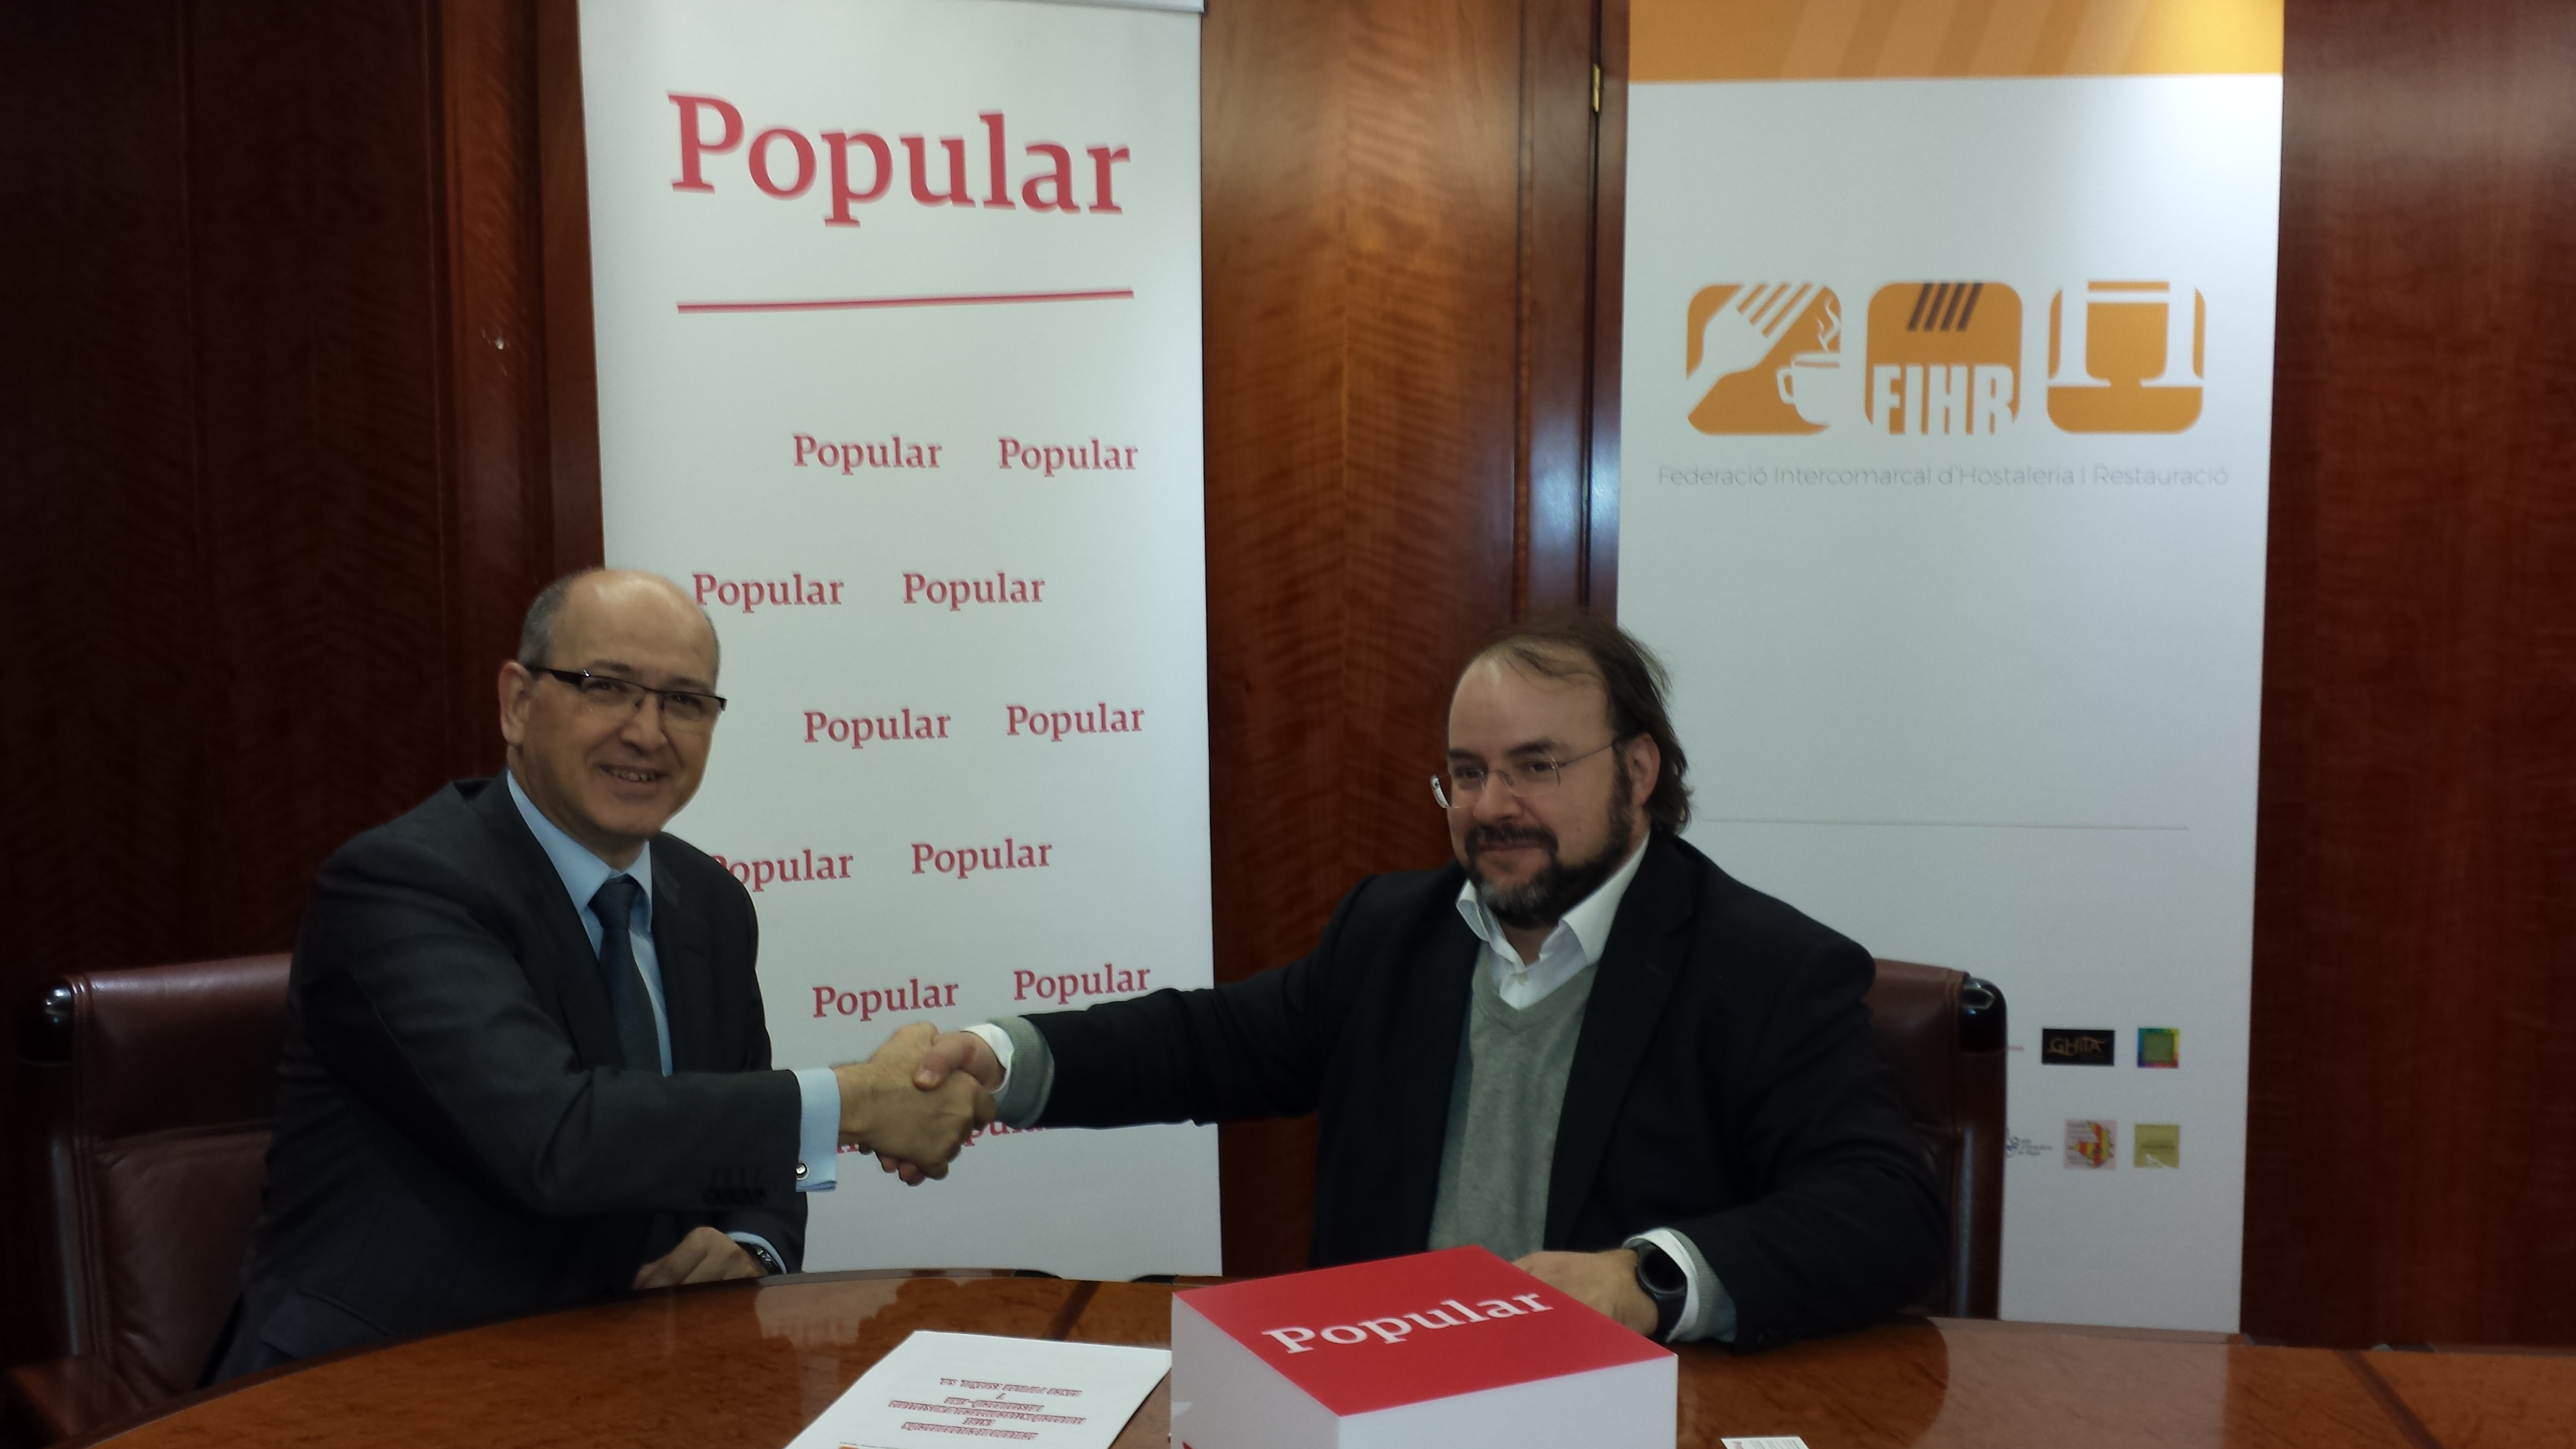 Banco Popular y FIHR firman un acuerdo de colaboración